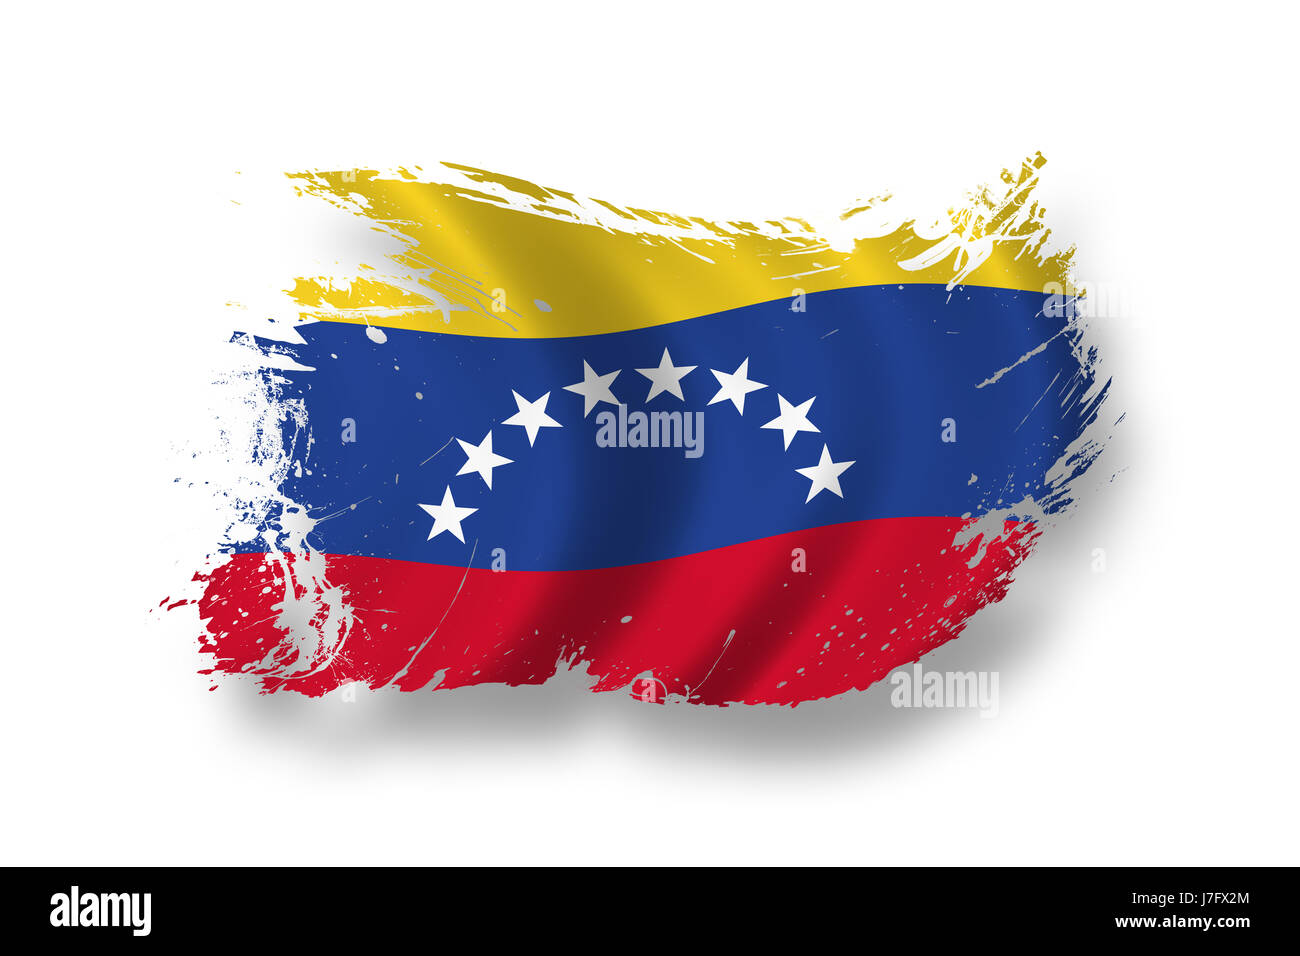 Bandera La bandera nacional de Venezuela Venezuela golpe pictograma símbolo nacional Foto de stock